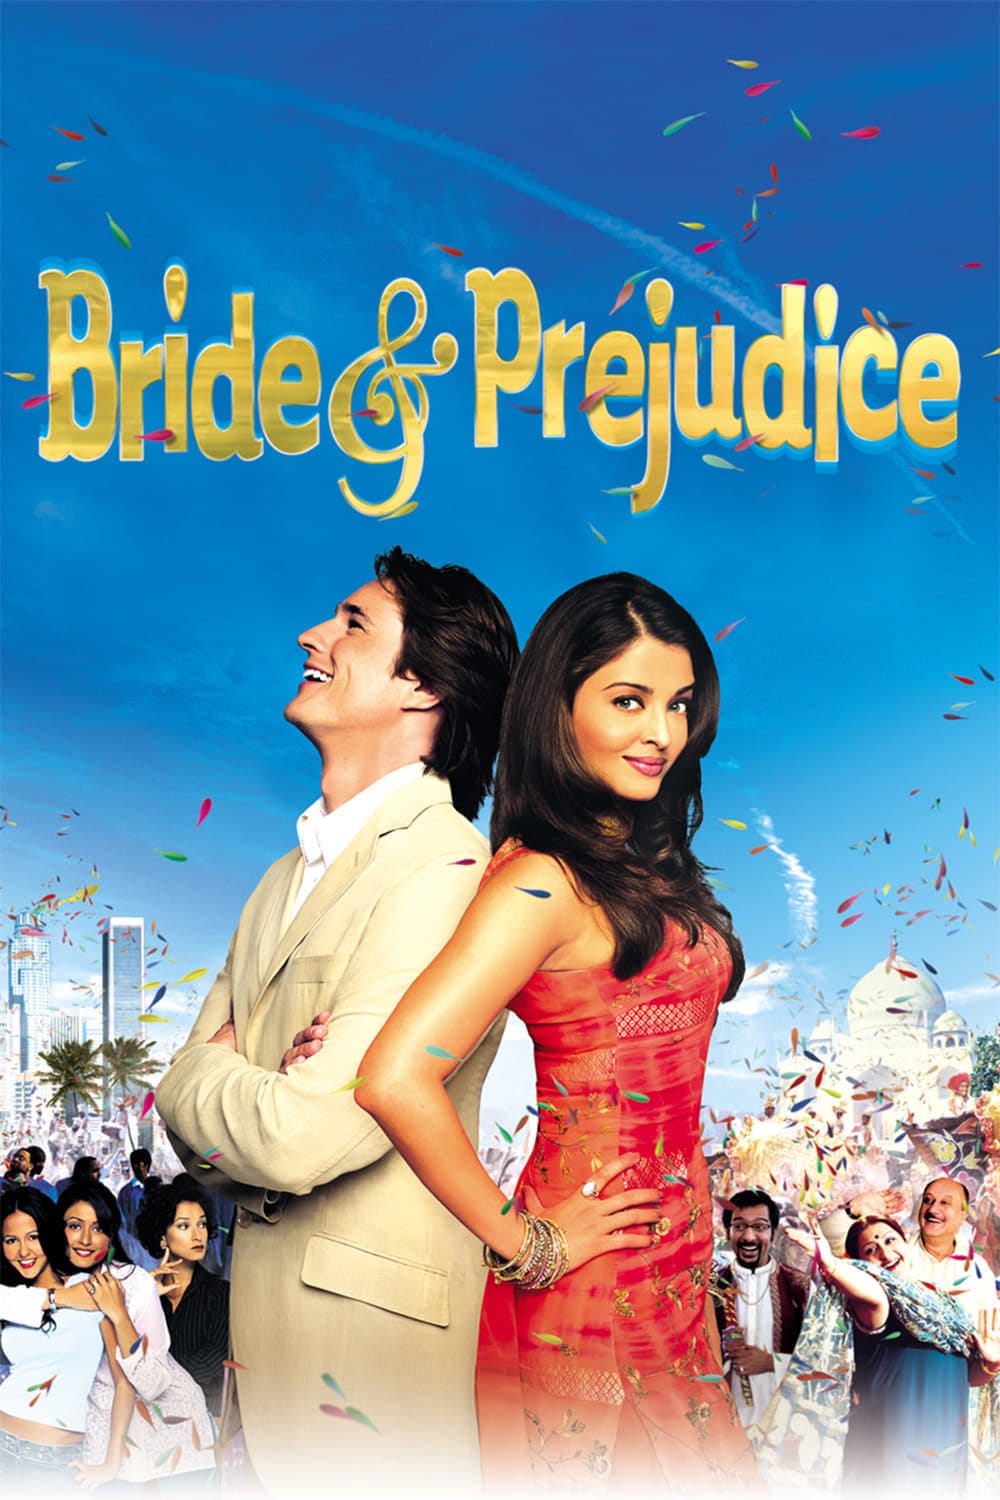 Bride & Prejudice (2004) | Poster